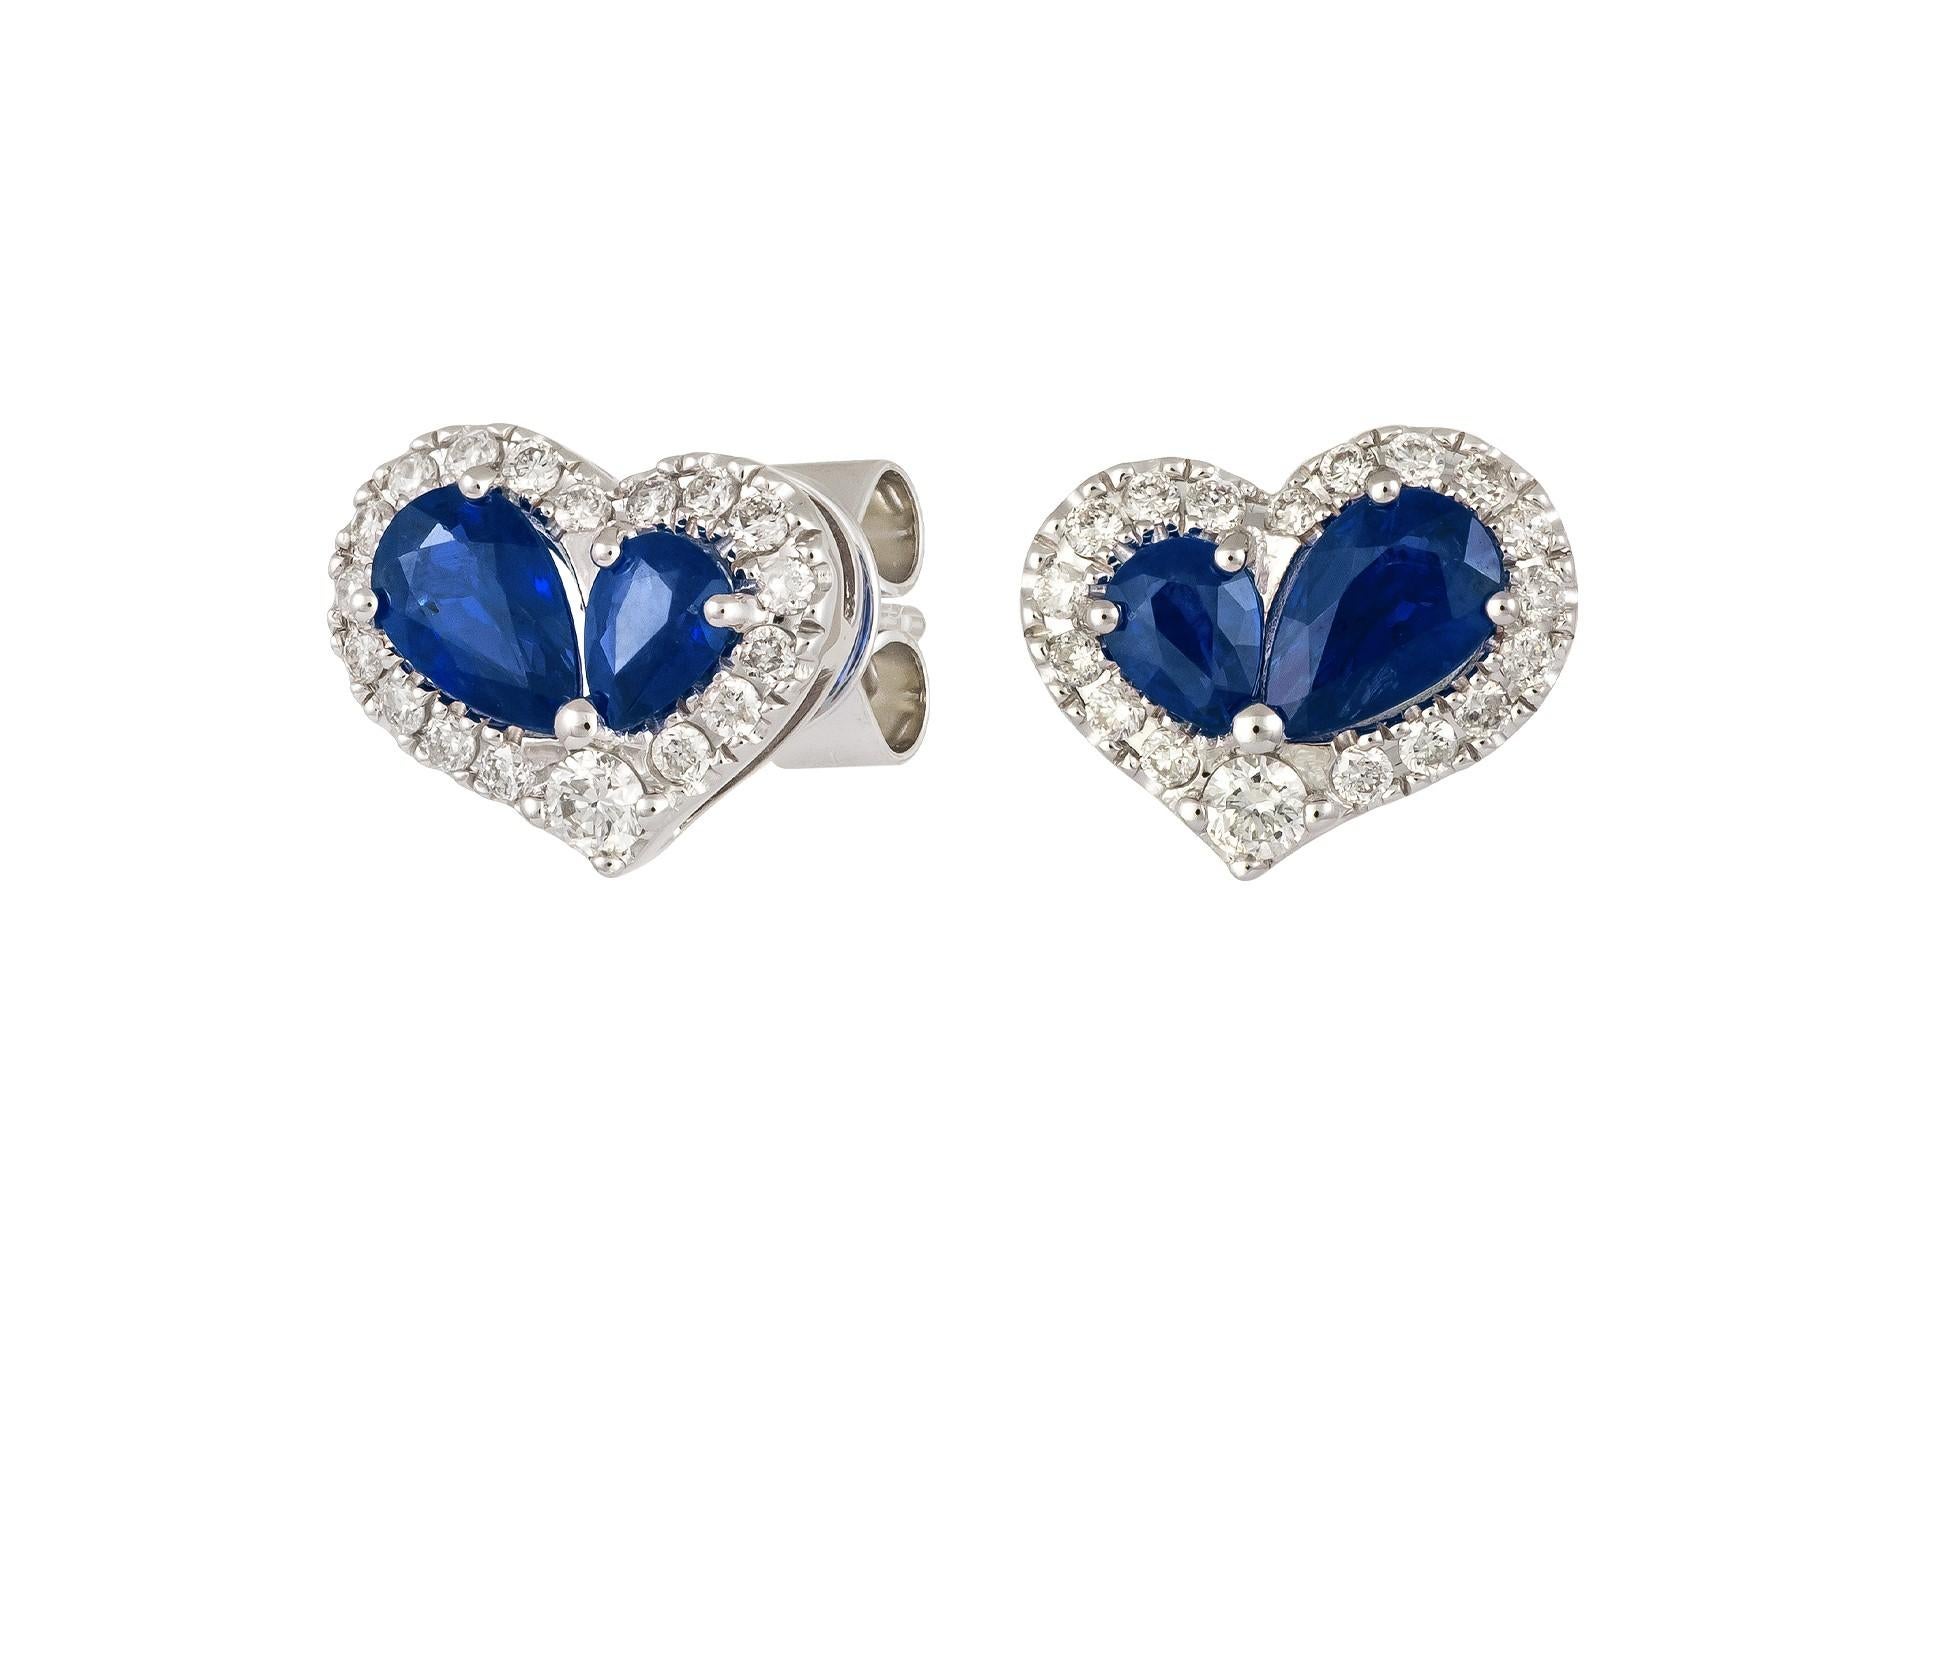 Das folgende Element, das wir anbieten, ist eine seltene wichtige Radiant 18KT Gold Large Rare Gorgeous Fancy Blue Sapphire and Diamond Heart Stud Earrings. Die Ohrringe bestehen aus wunderschönen glitzernden Saphiren und herrlichen Diamanten!!!